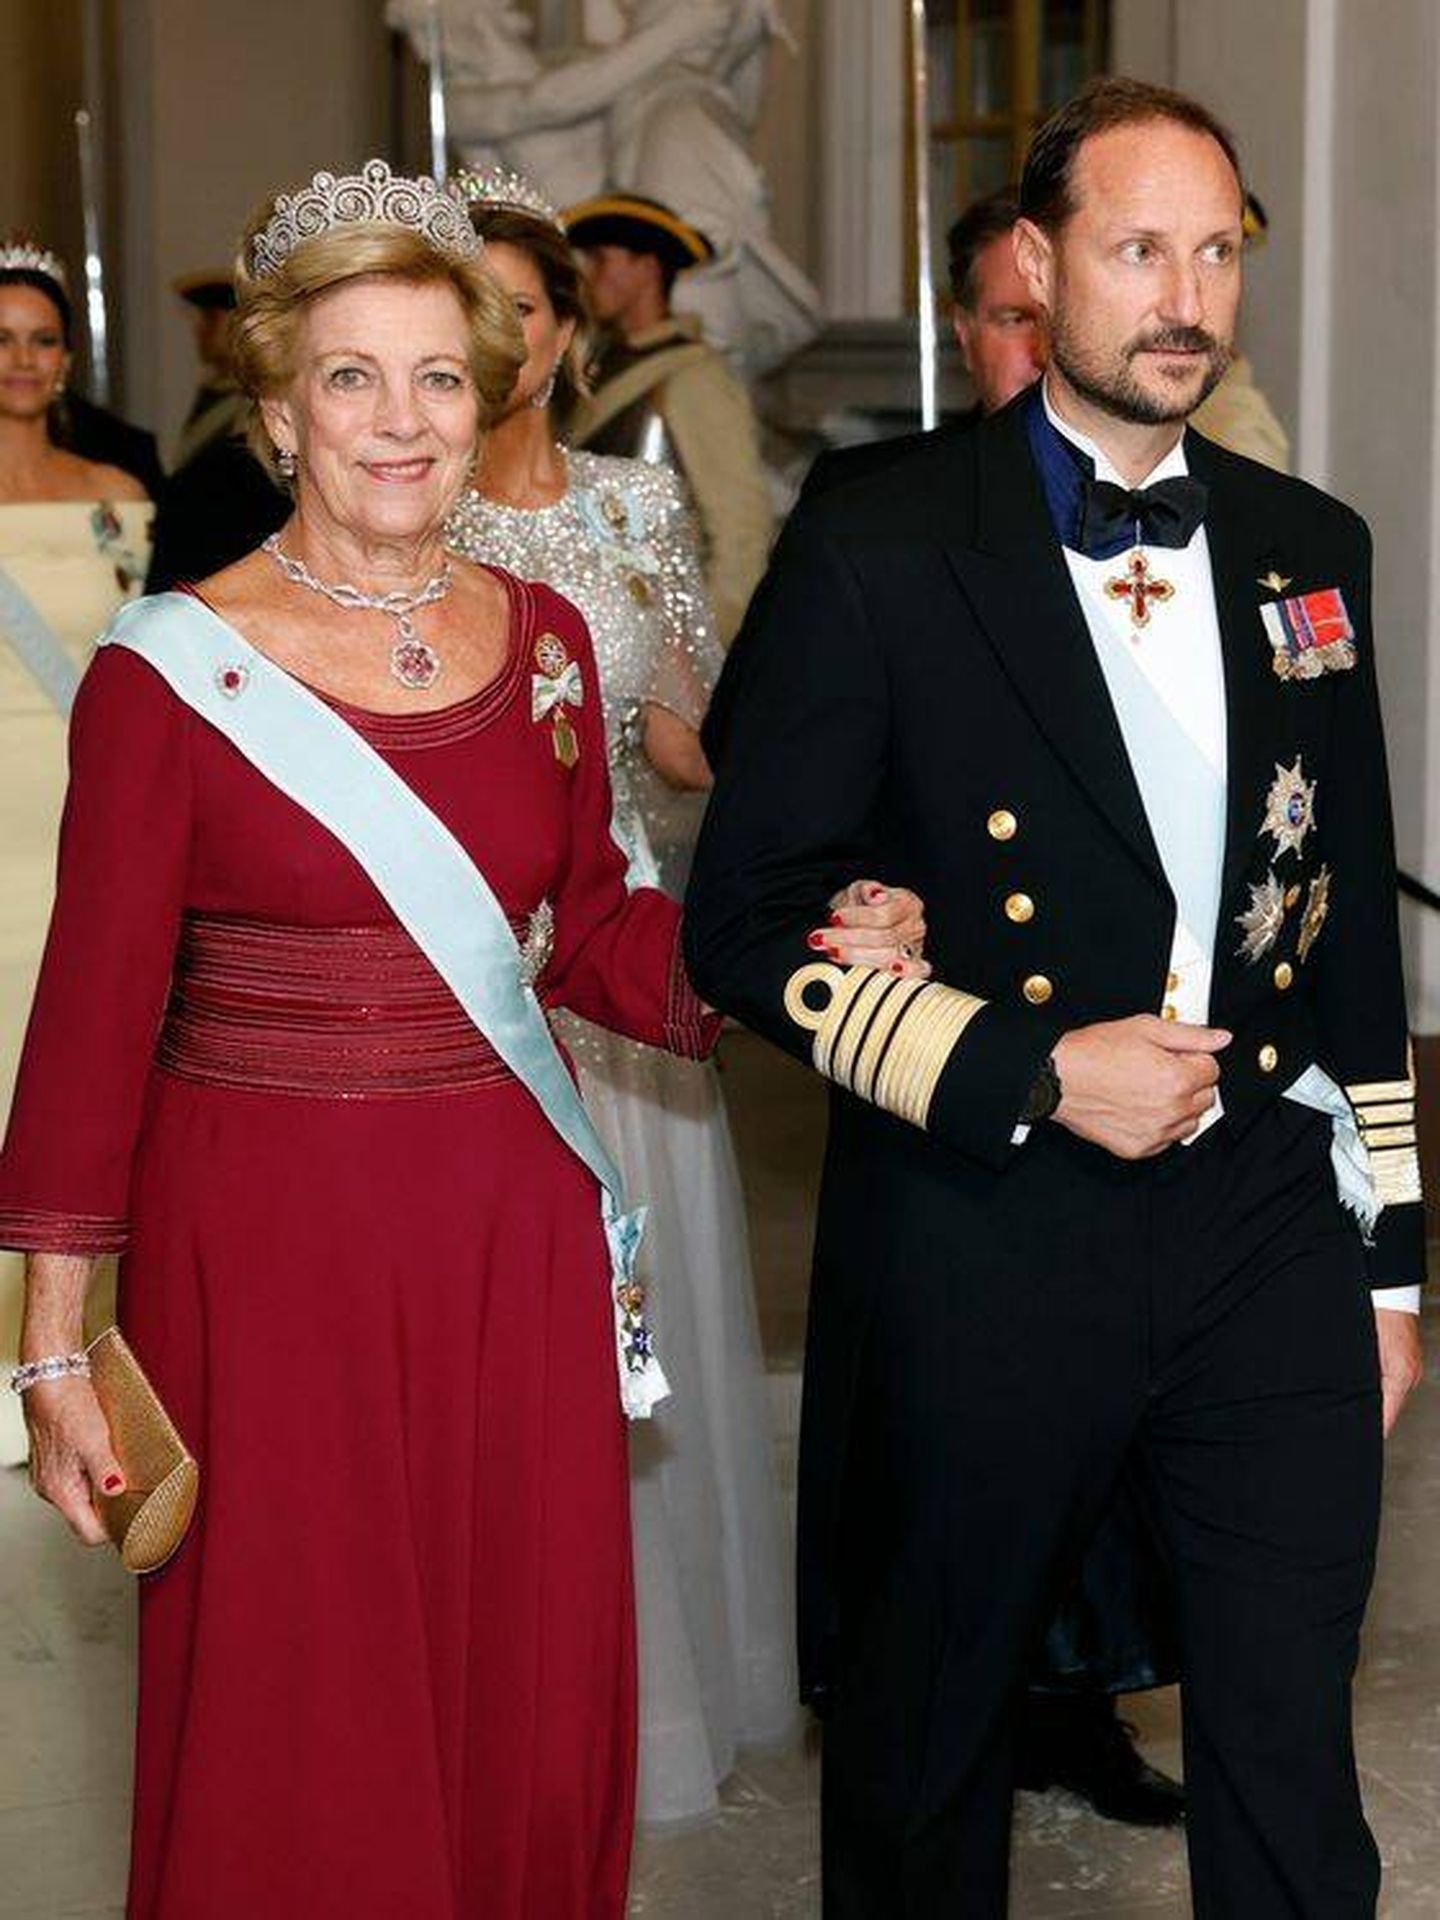  La reina Ana María junto a Haakon de Noruega. (Getty)